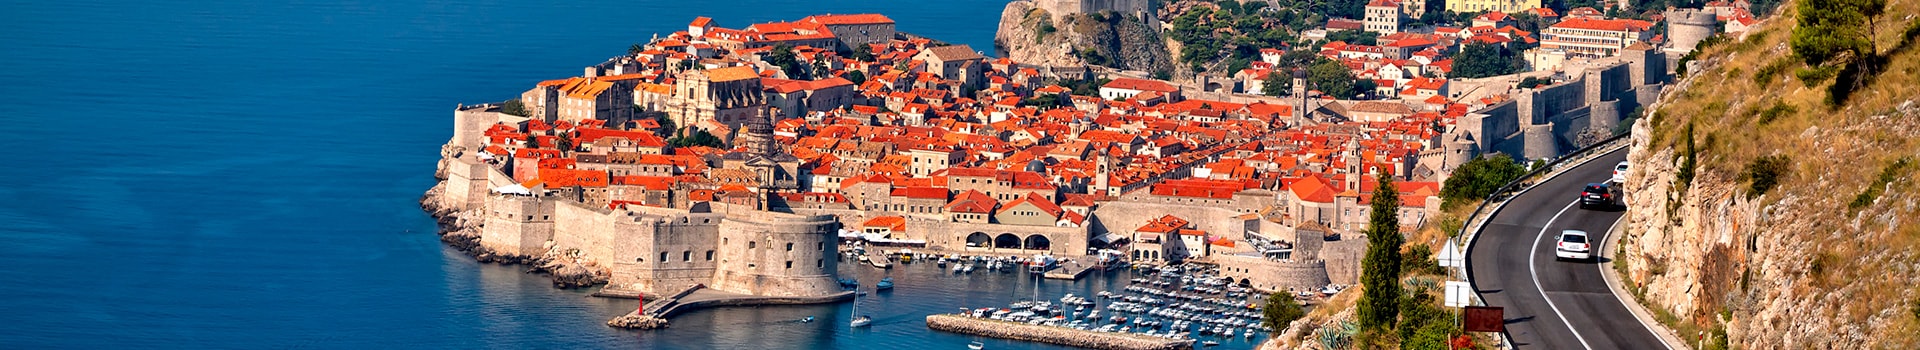 Madrid - Dubrovnik